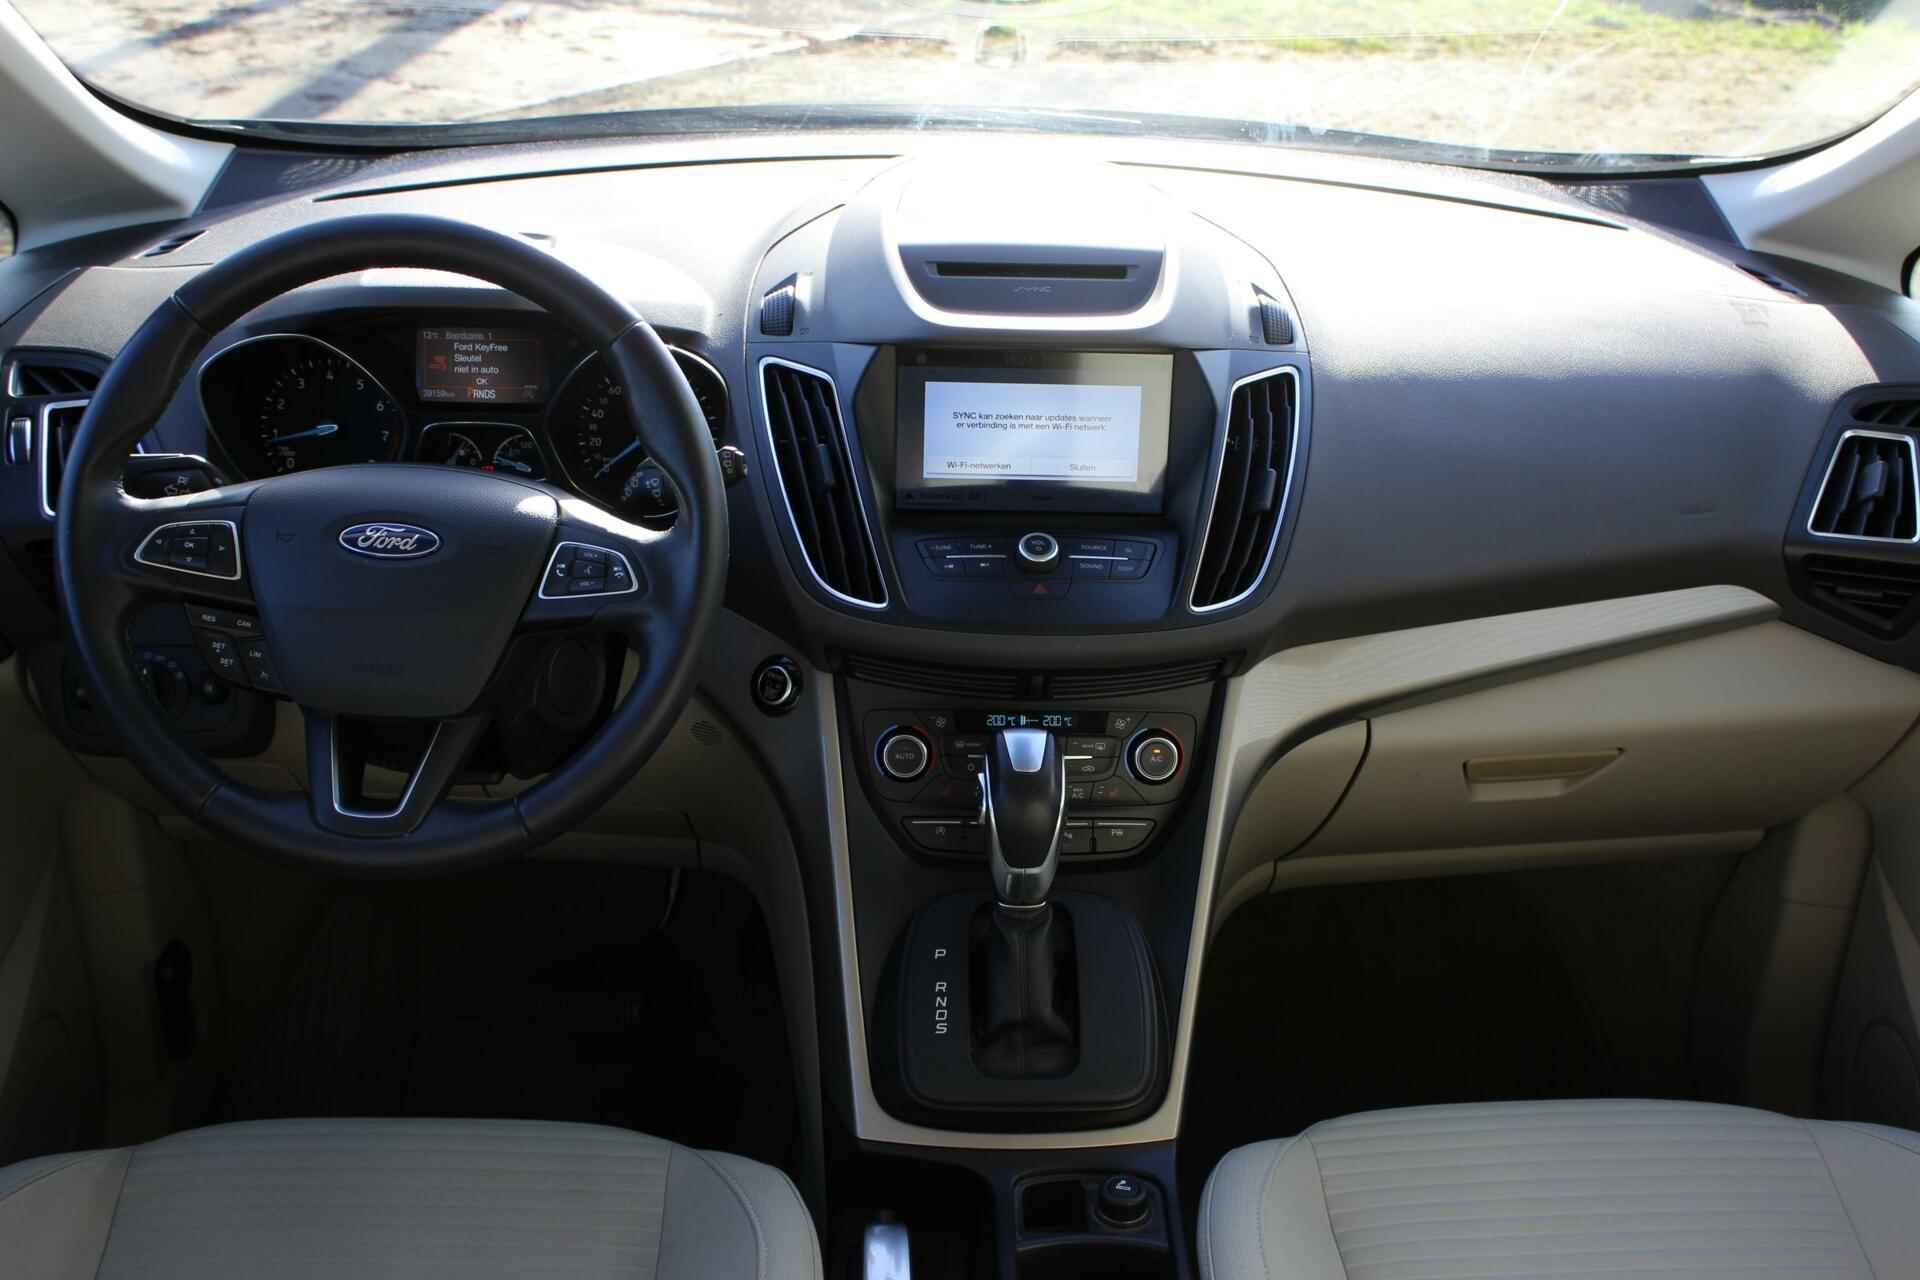 Ford C-Max 1.5 Titanium // Trekhaak - Navigatie - Camera - Apple CarPlay & Android Auto - Cruise control - 11/22